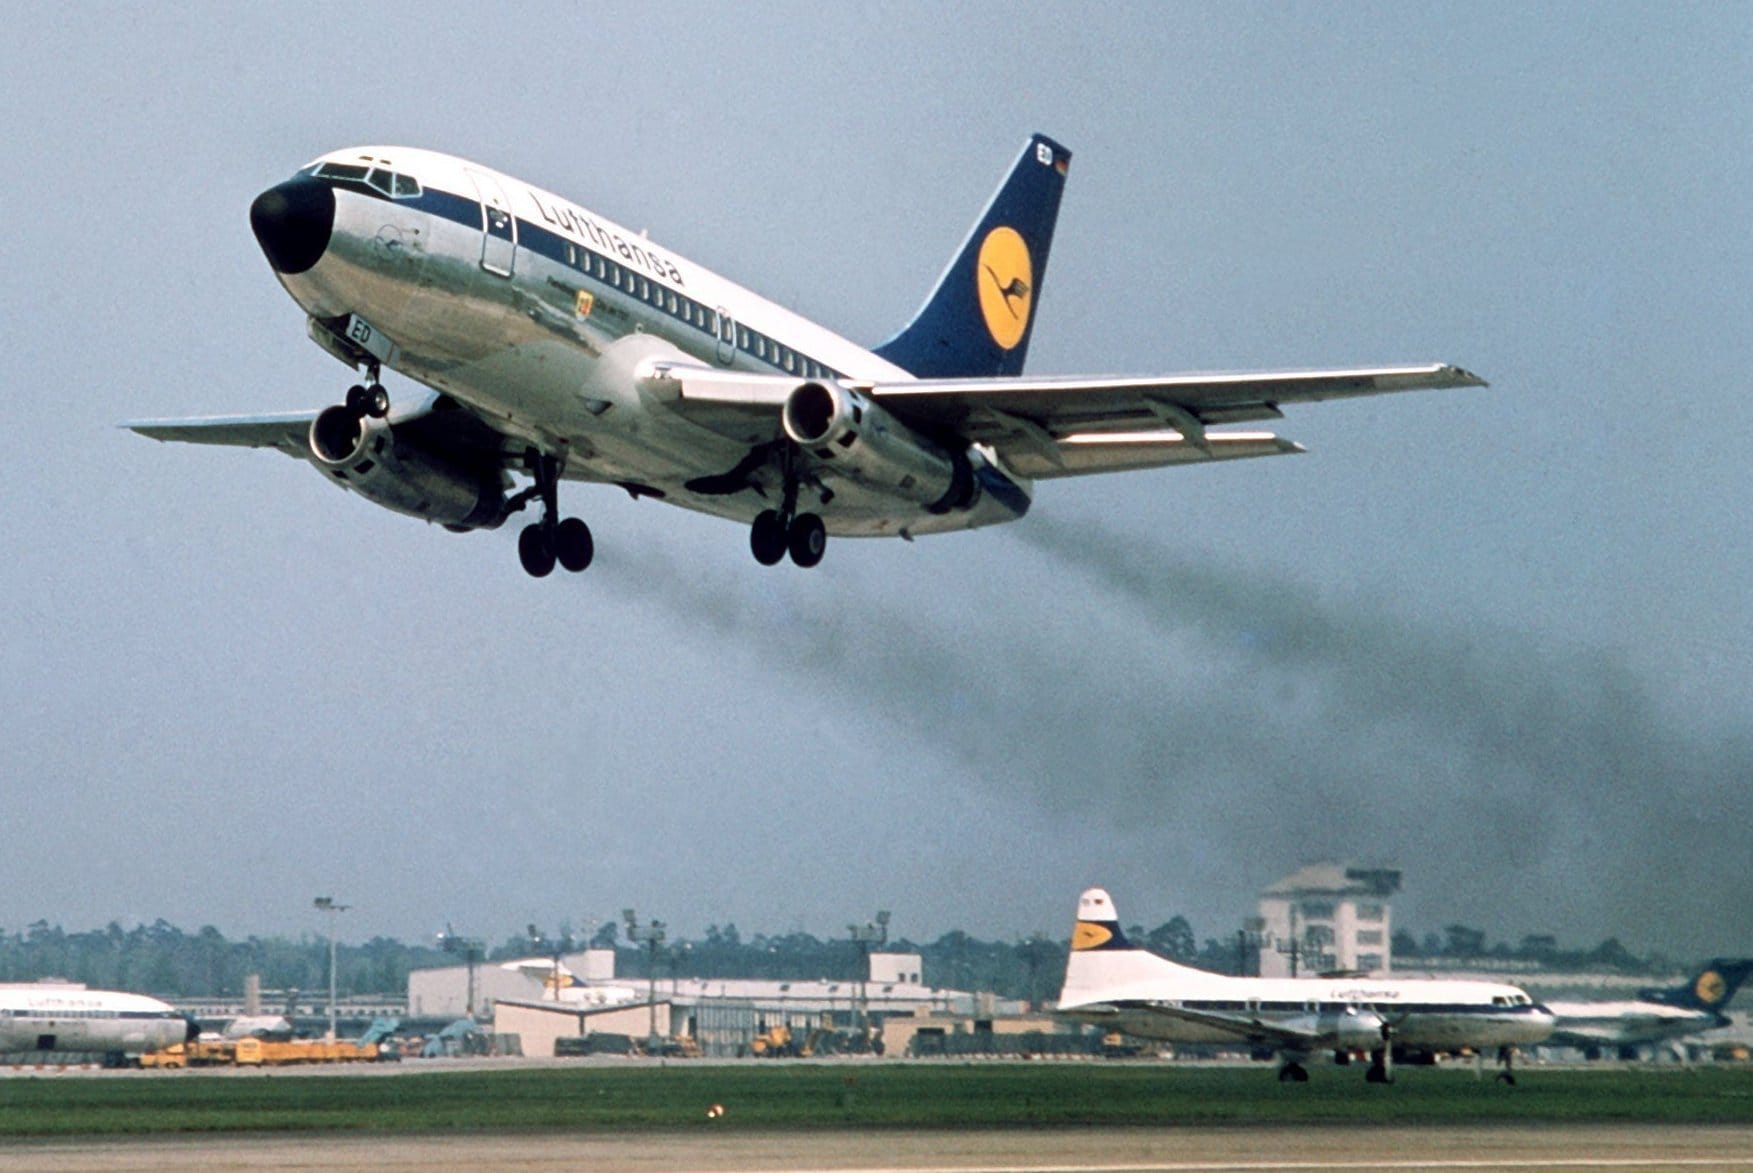 Dazu zählt die Boeing 737, die 1967 zum ersten Mal abhob. Boeing entwickelt die Kurz- und Mittelstreckenflieger bis heute weiter. So wurde die Boeing 737 zum erfolgreichsten Düsenverkehrsflugzeug der Luftfahrtgeschichte.